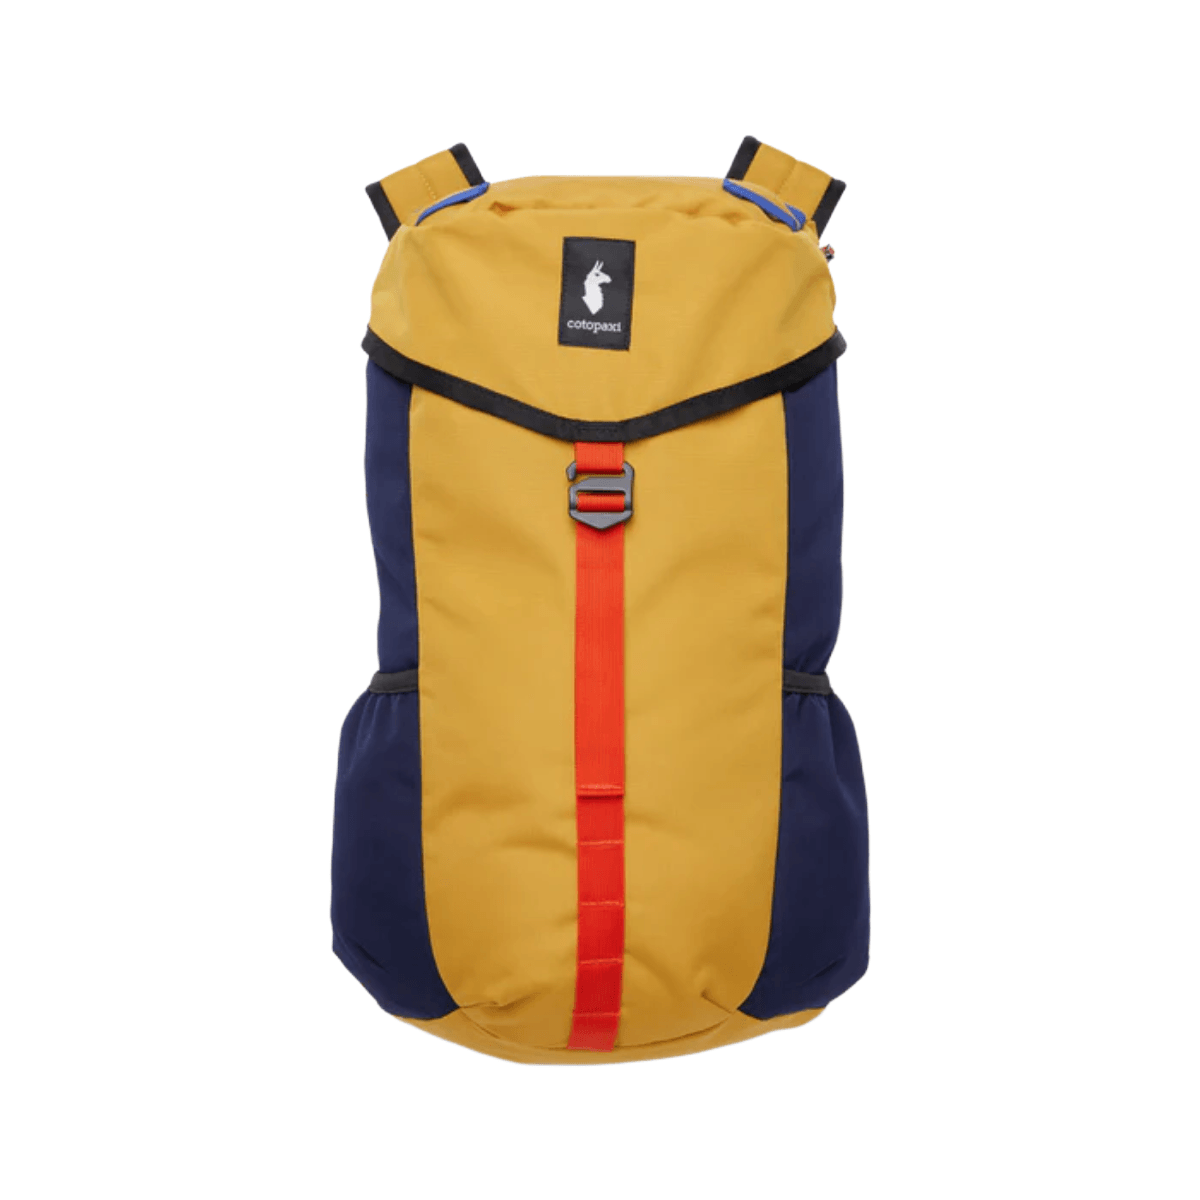 Cotopaxi Tapa 22L Backpack - Als.com